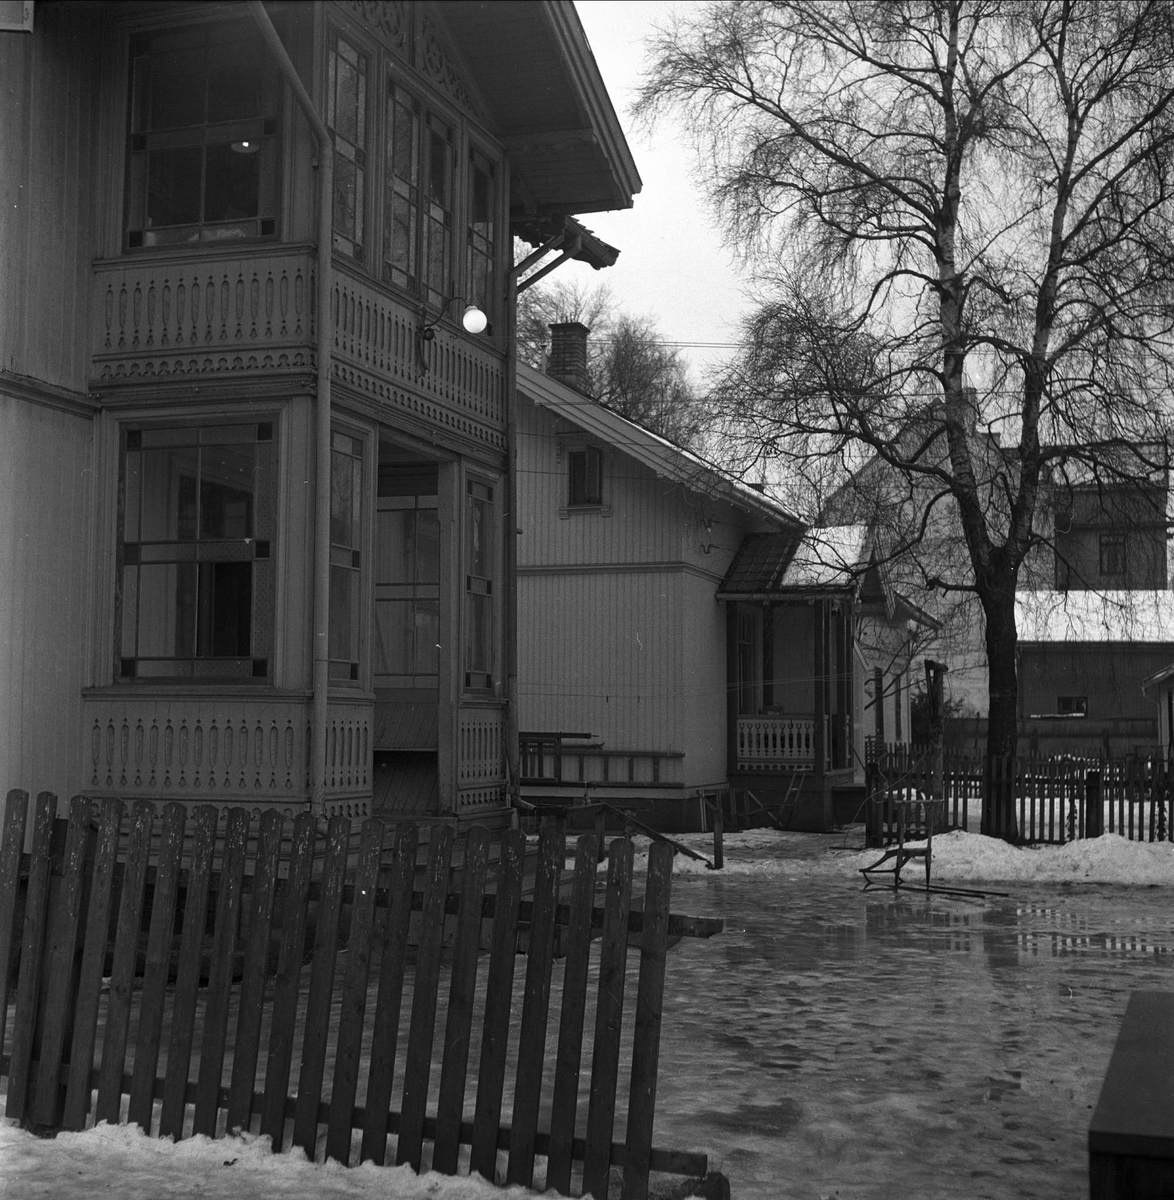 Lillestrøm, Skedsmo, Akershus, desember 1952. Eldre villabebyggelse. Sveitserstil, glassveranda.